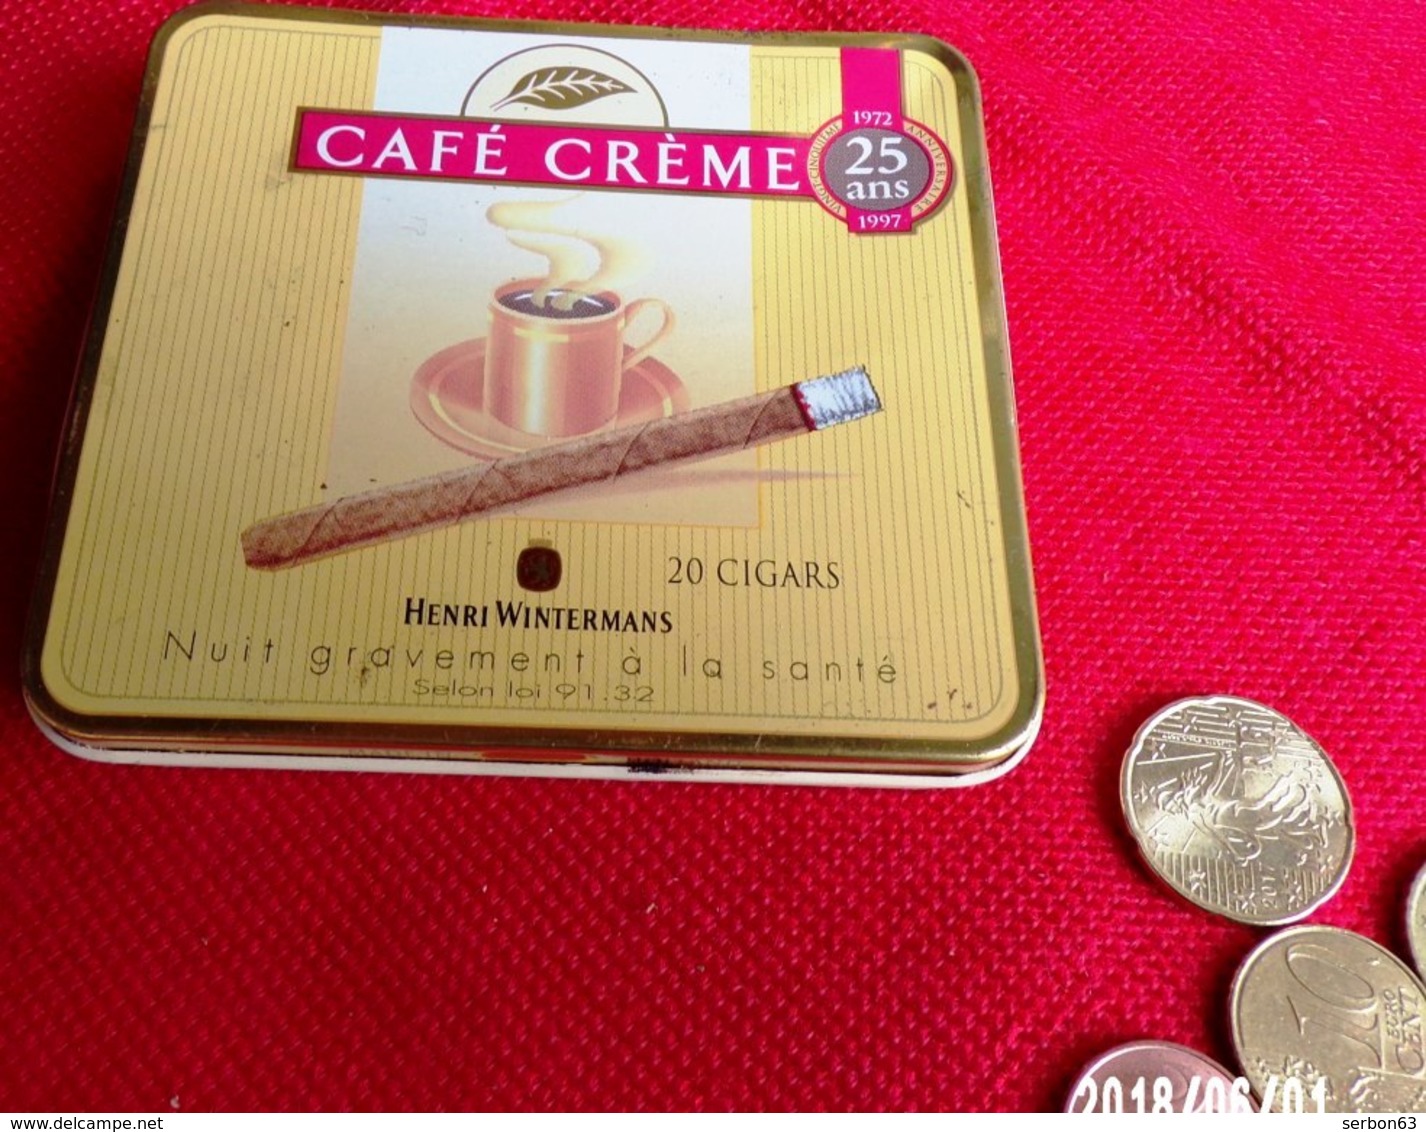 CAFÉ CRÈME 1972/1997 - BOITE MÉTALLIQUE USAGÉE PUBLICITAIRE 20 HENRI WINTERMANS CIGARES VIDE TABAC PUBLICITÉ - Serbon63 - Boites à Tabac Vides